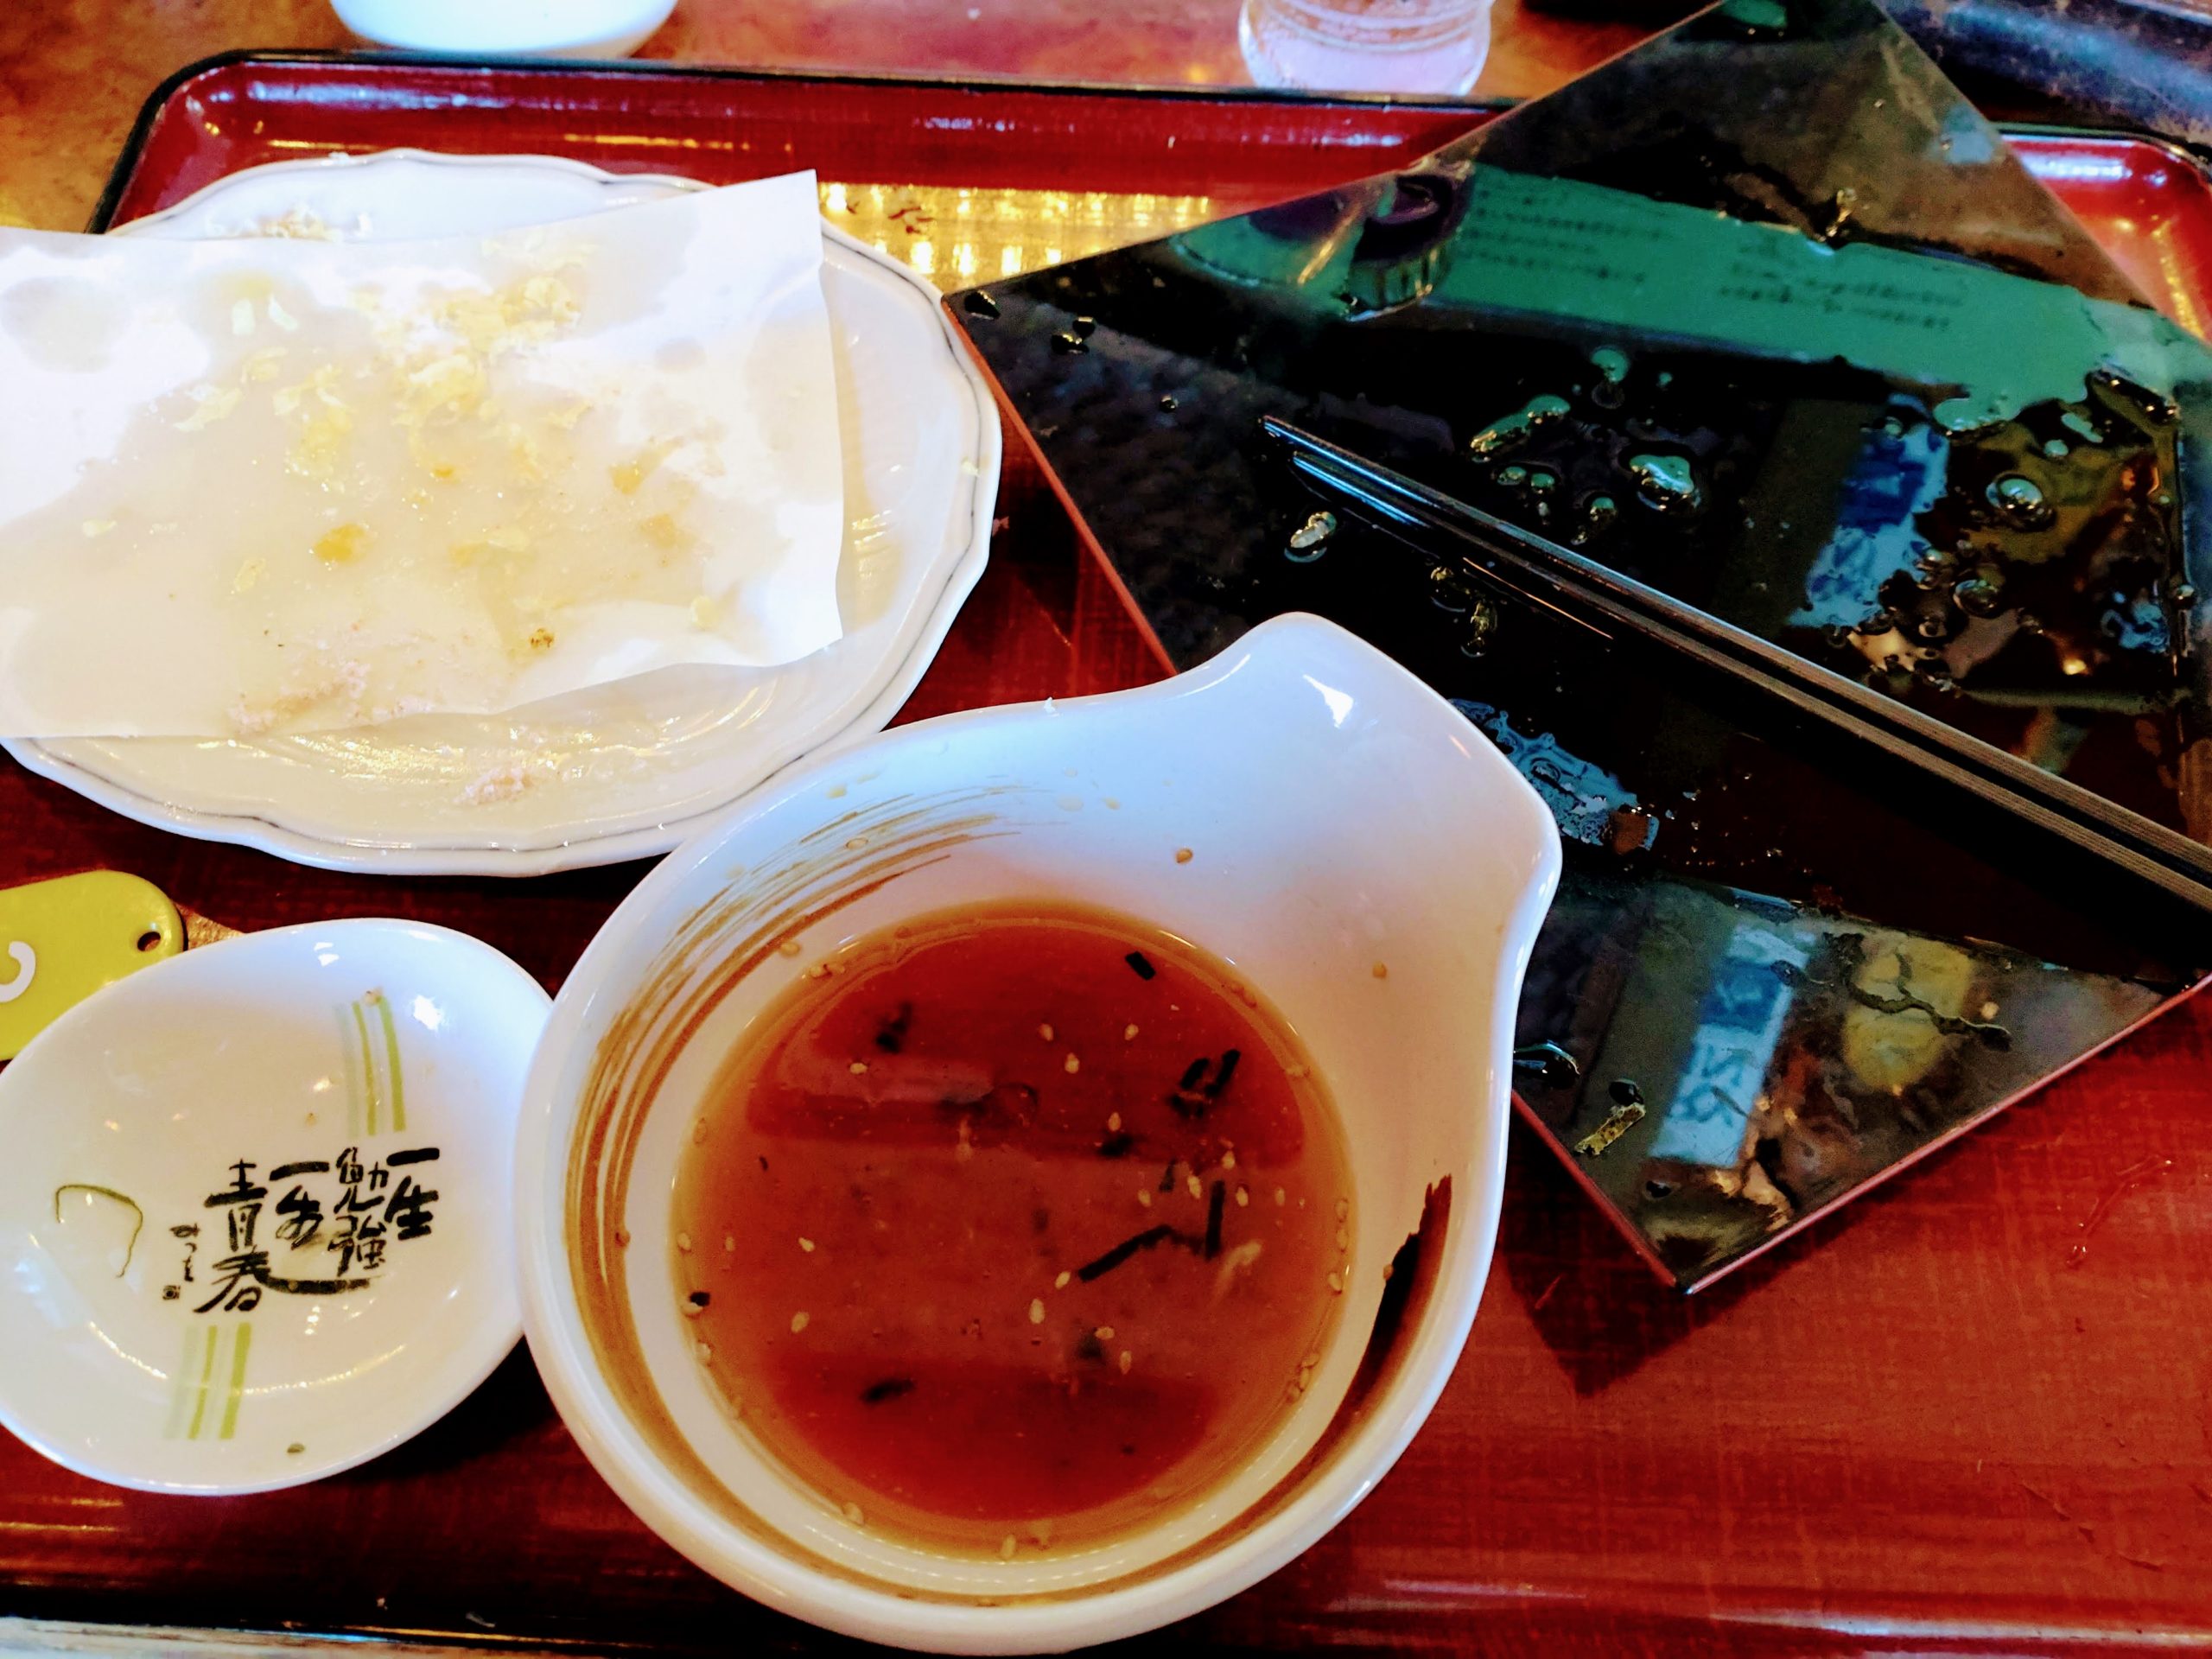 天ぷらざるうどんを完食